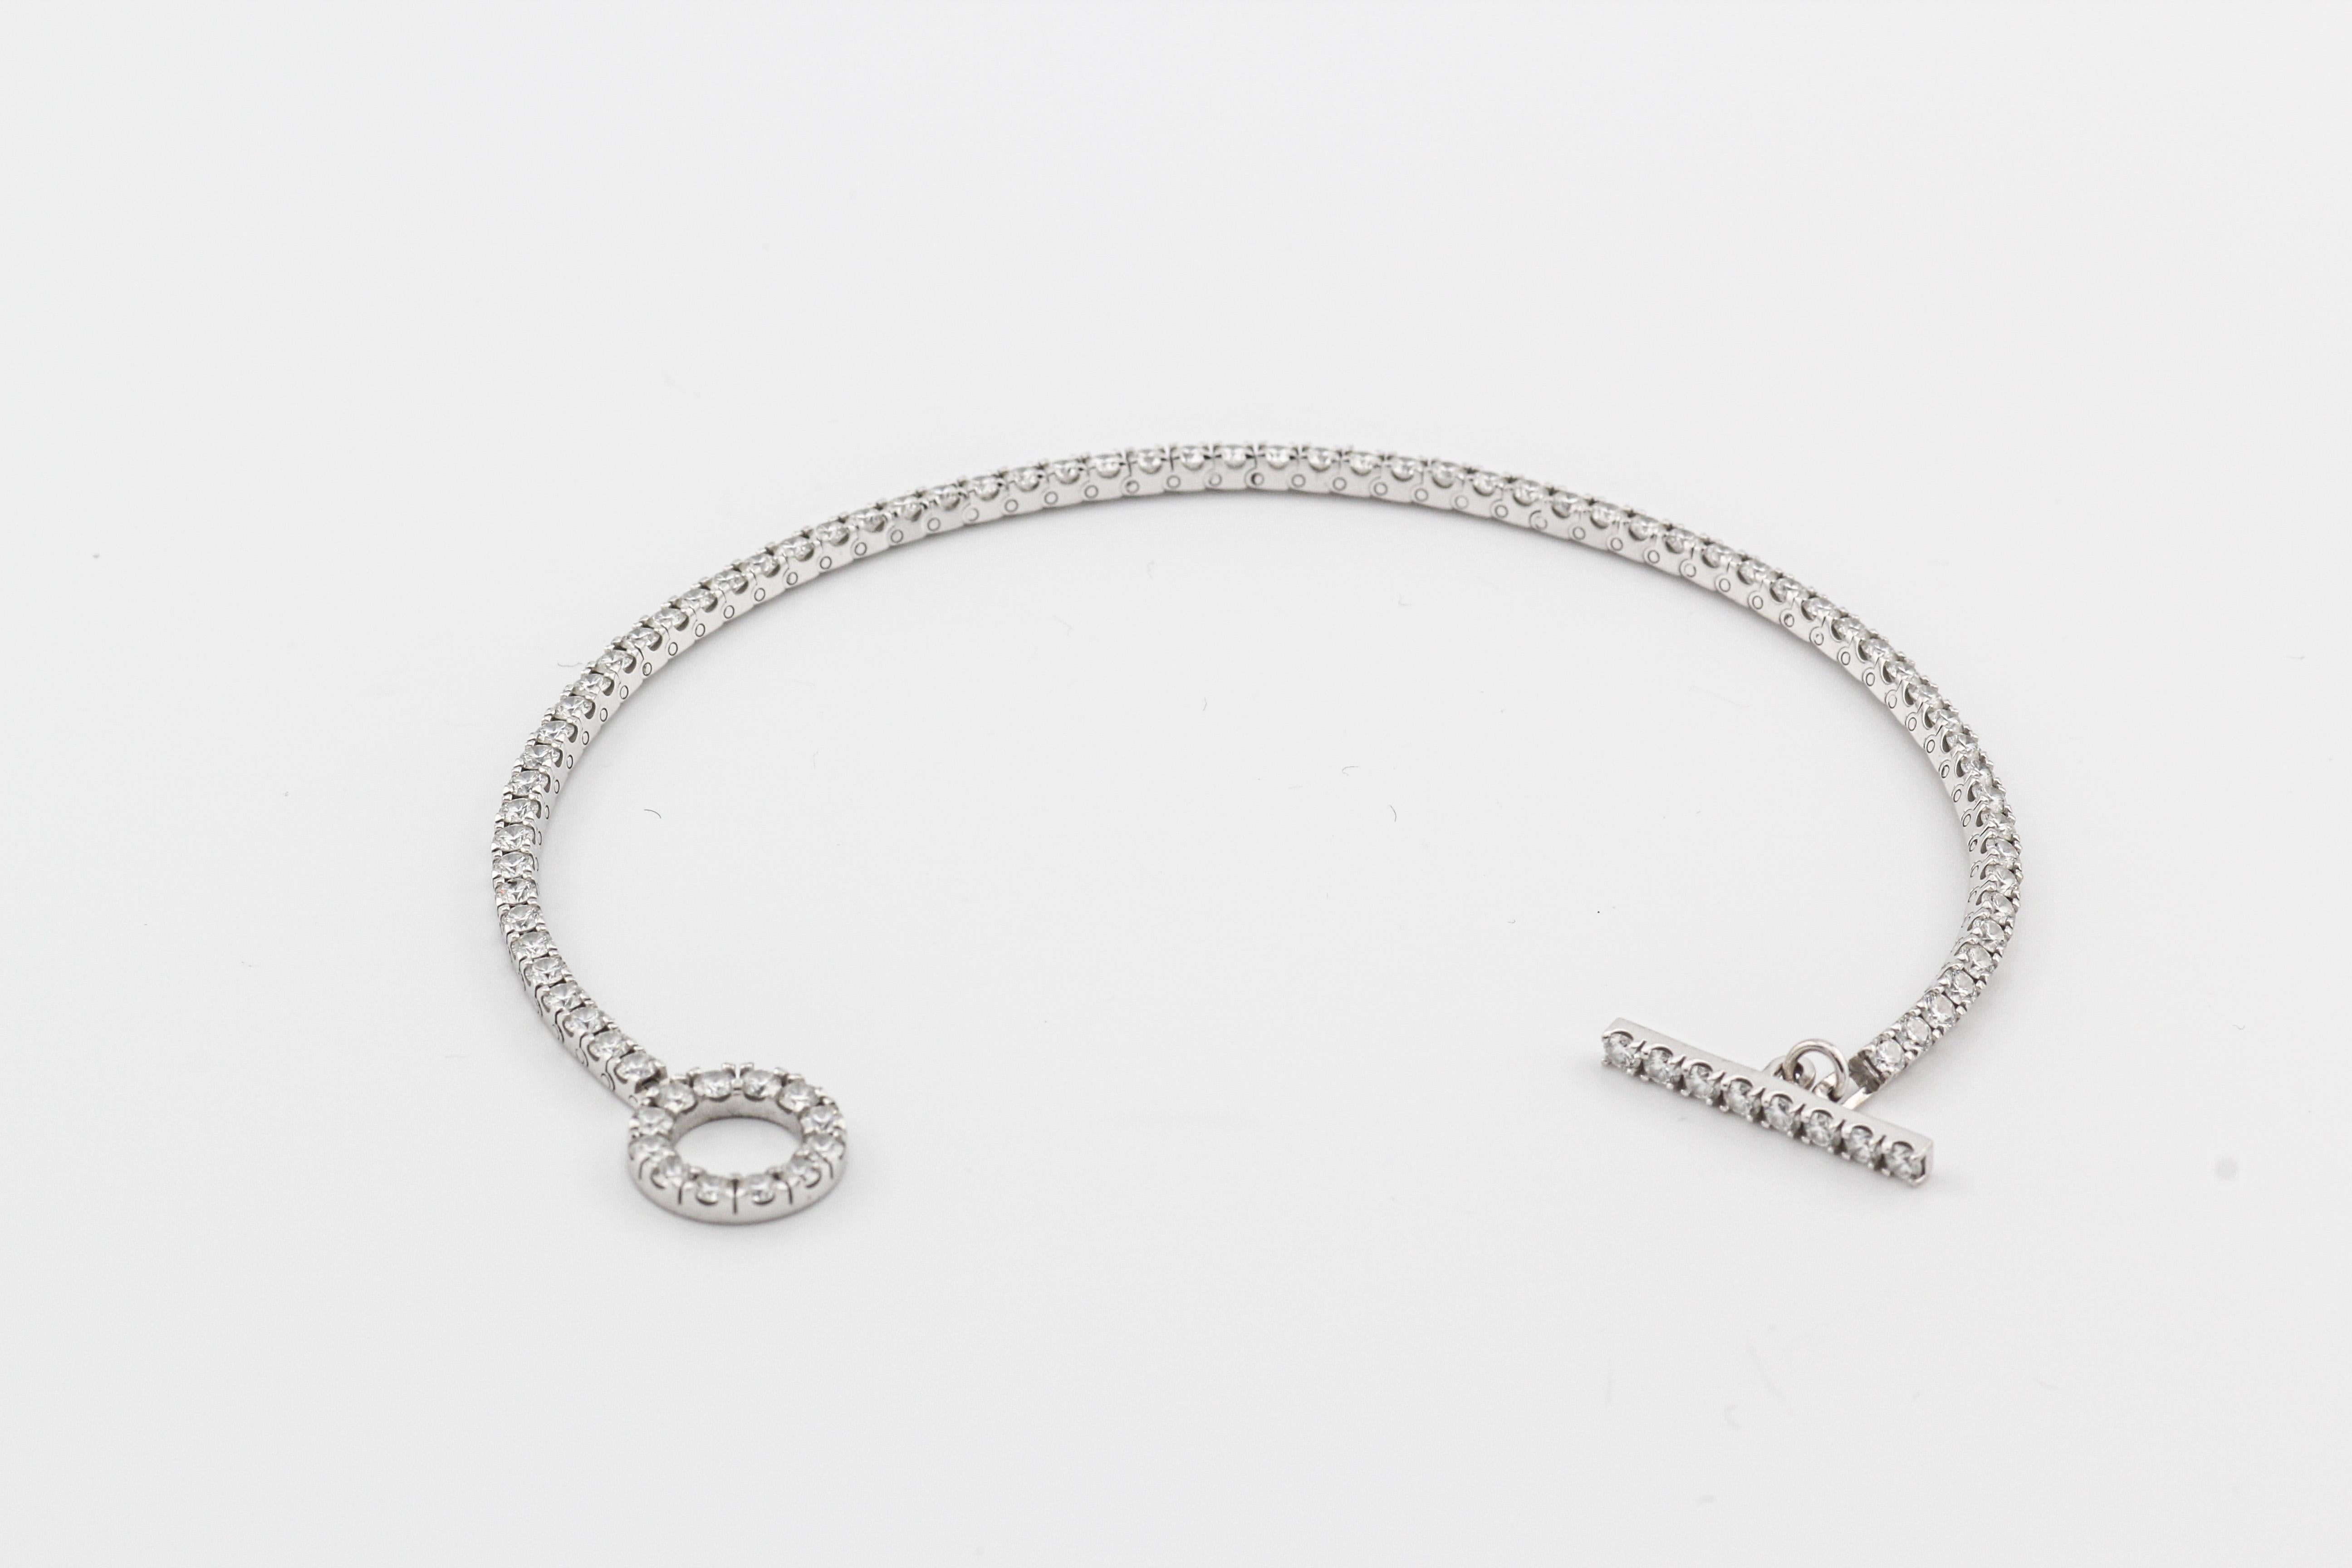 Le bracelet de tennis Finesse en or blanc 18k Hermes Diamond est un bijou éblouissant et sophistiqué qui allie sans effort le luxe et l'élégance intemporelle.  Fabriqué par la célèbre marque de luxe française Hermès, ce bracelet est une véritable